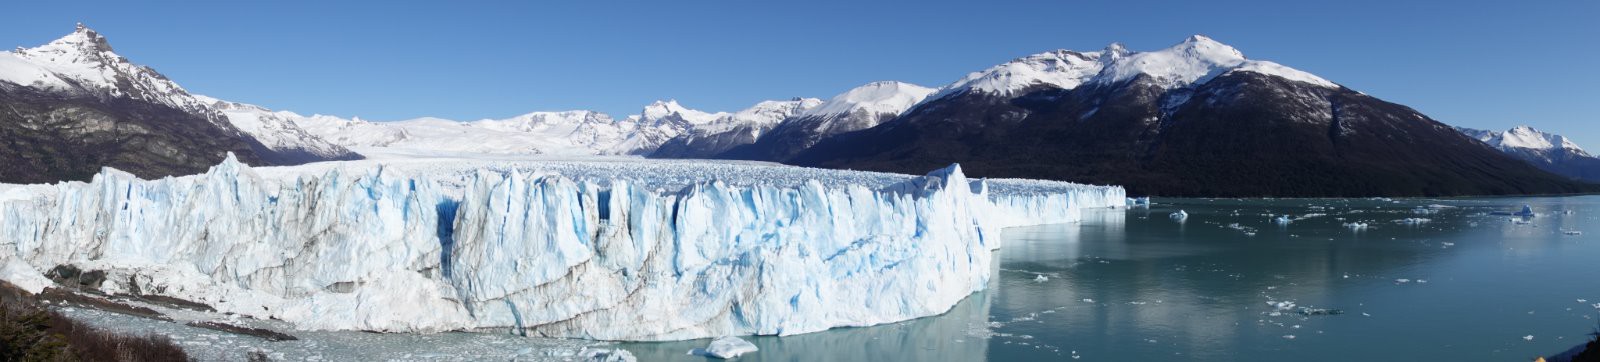 Panoramique du glaciar perito moreno